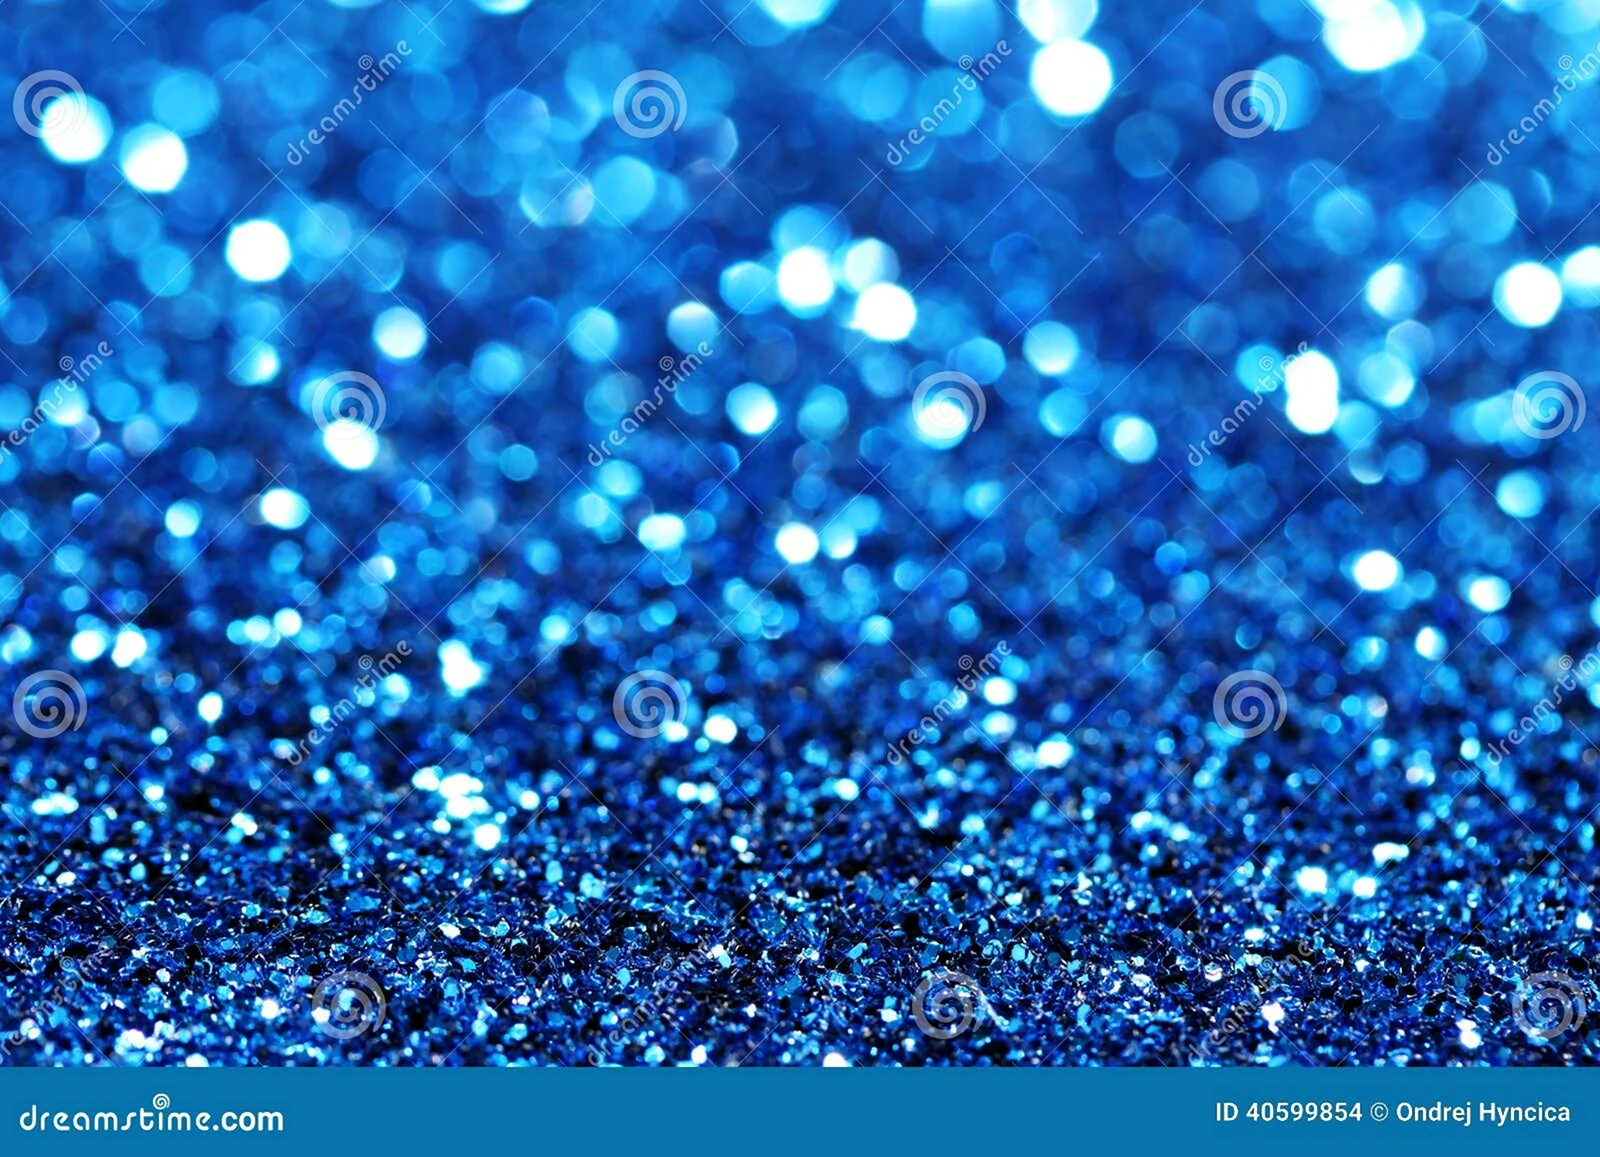 Синий фон с пузырьками с блеском